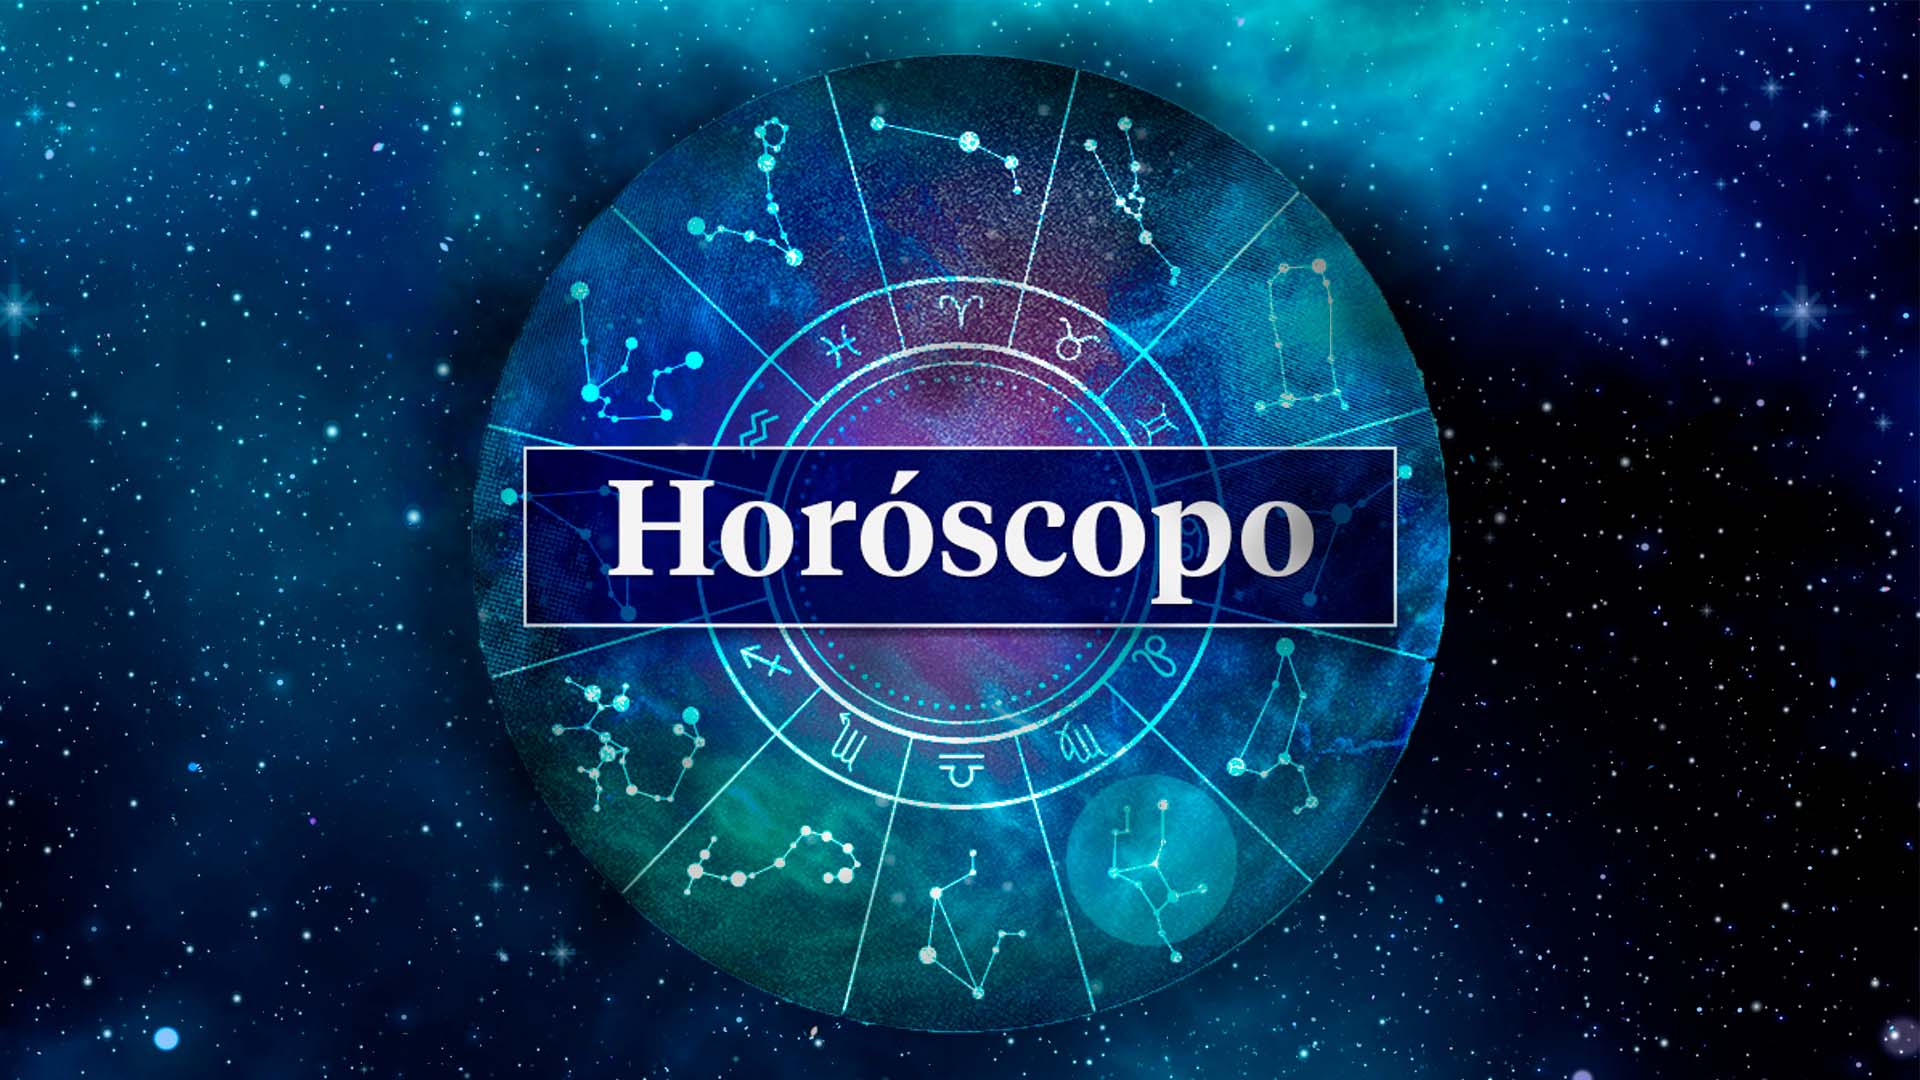 horoscopo-consulta-las-predicciones-para-cada-signo-del-zodiaco